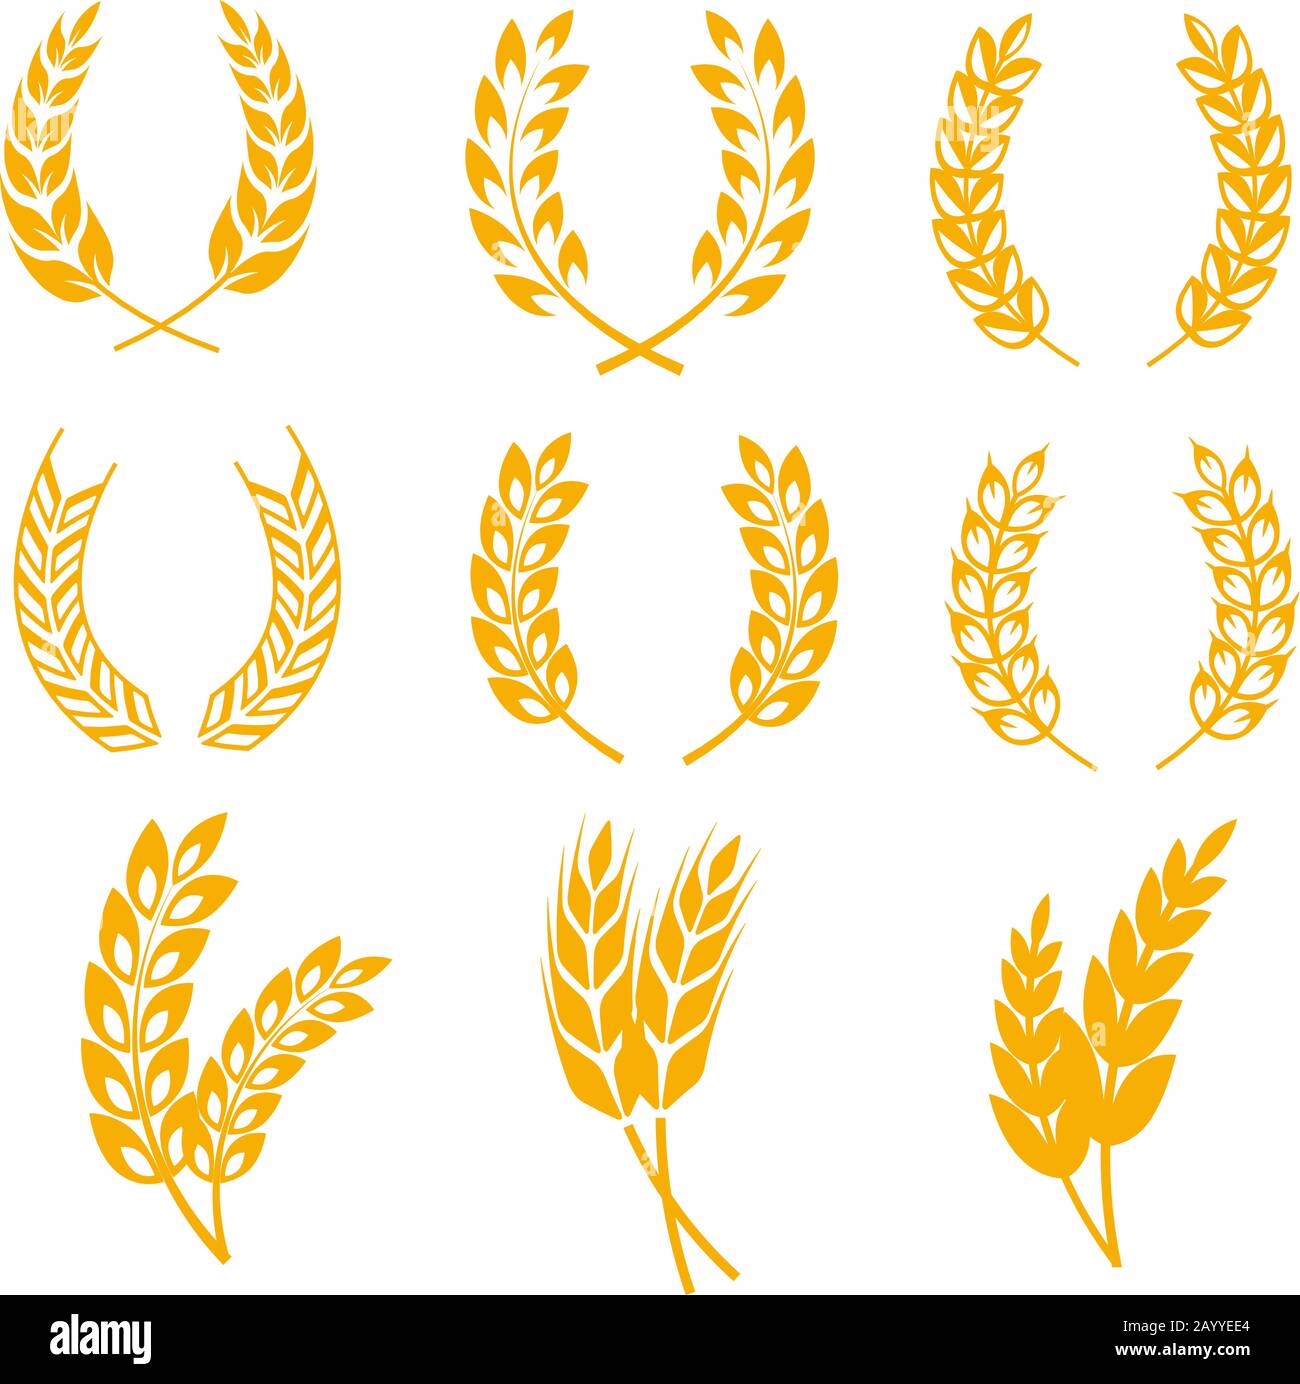 Oreilles de blé de seigle couronnes éléments vectoriels pour étiquettes et logos de pain et de bière. Illustration du seigle doré des céréales de récolte Illustration de Vecteur